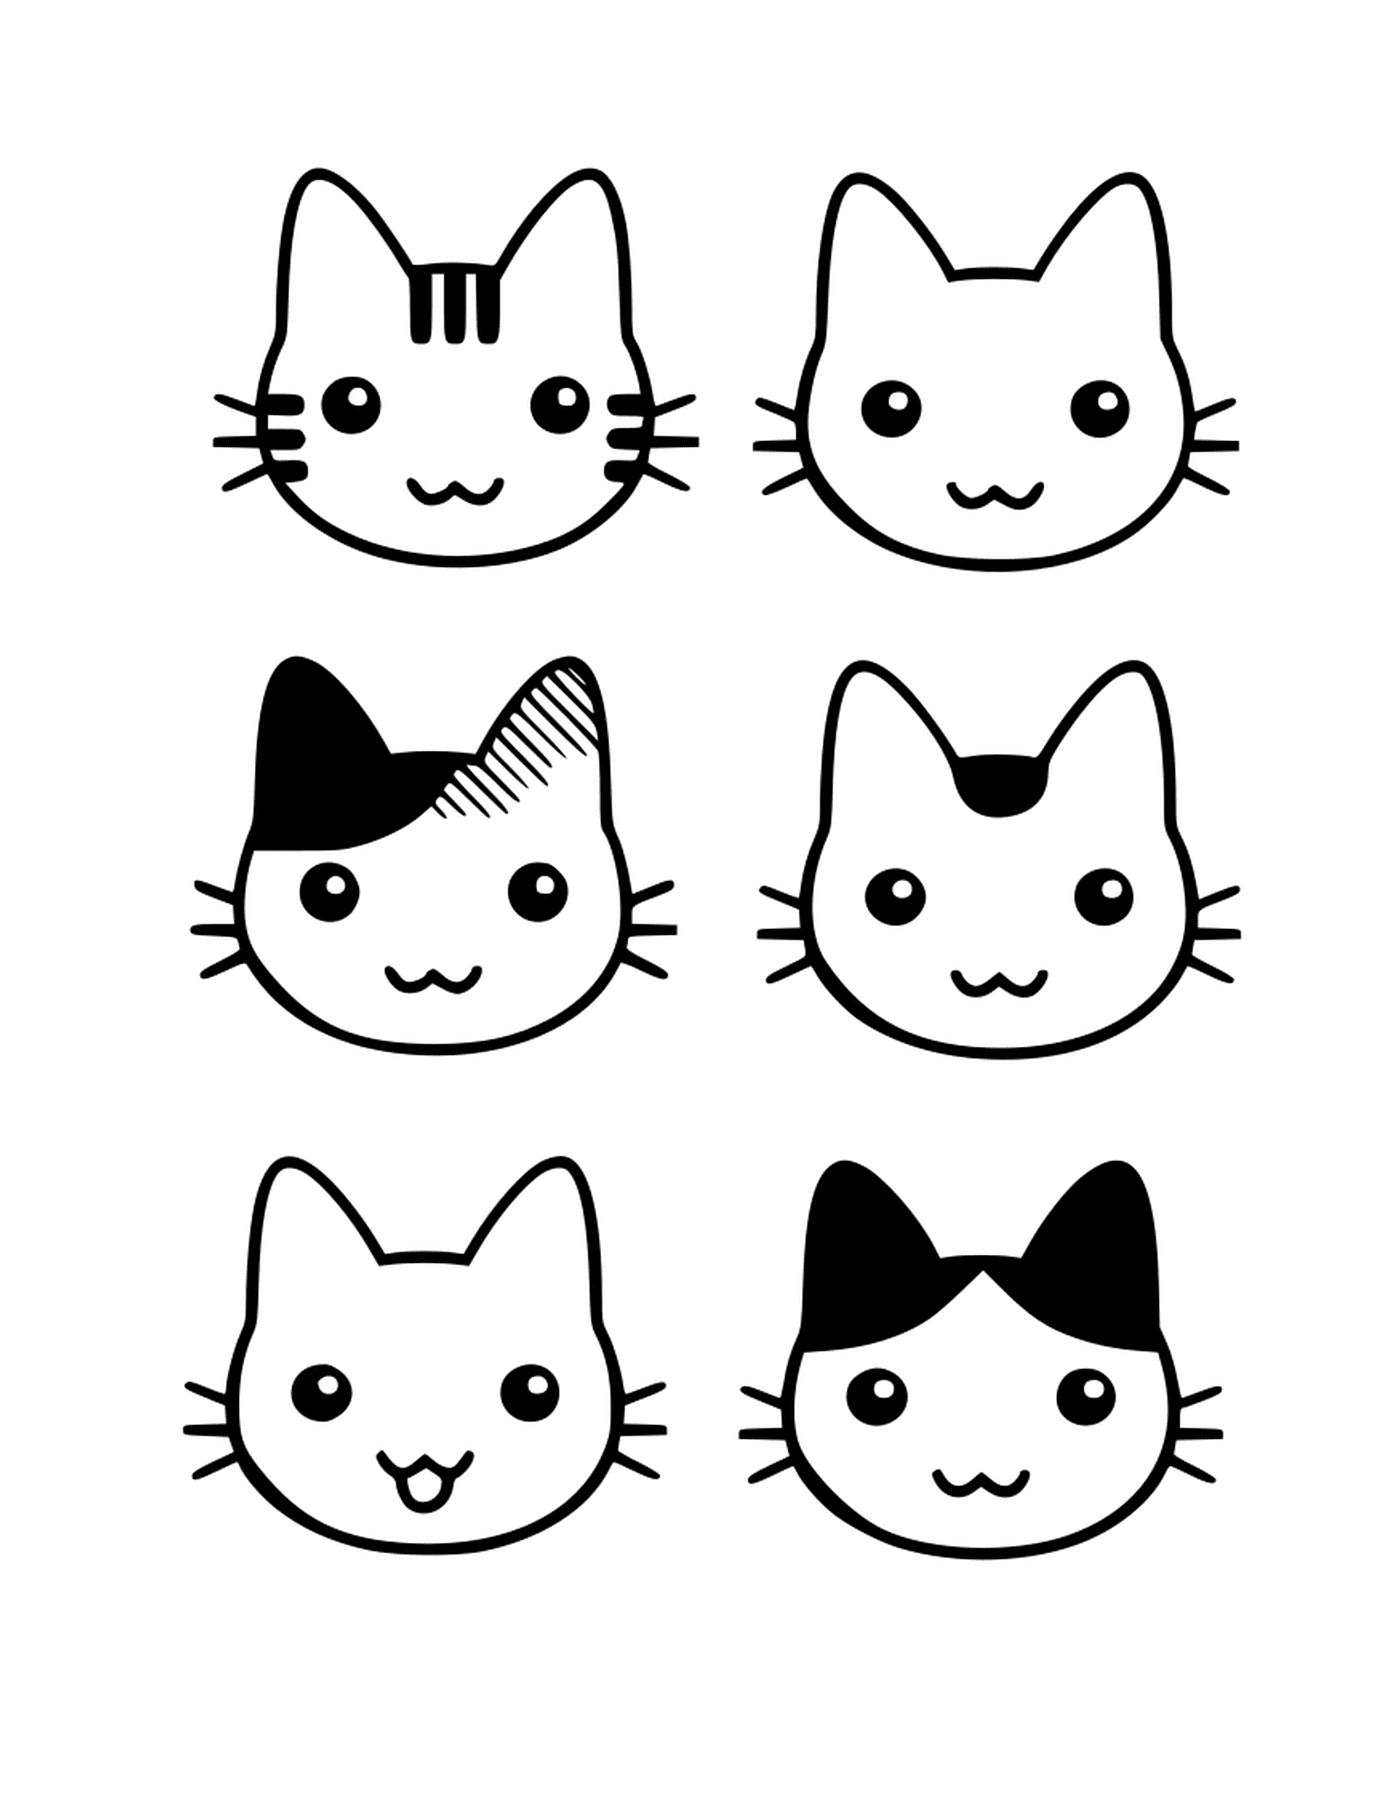  Cabeças de gatinho muito bonito desenhadas 